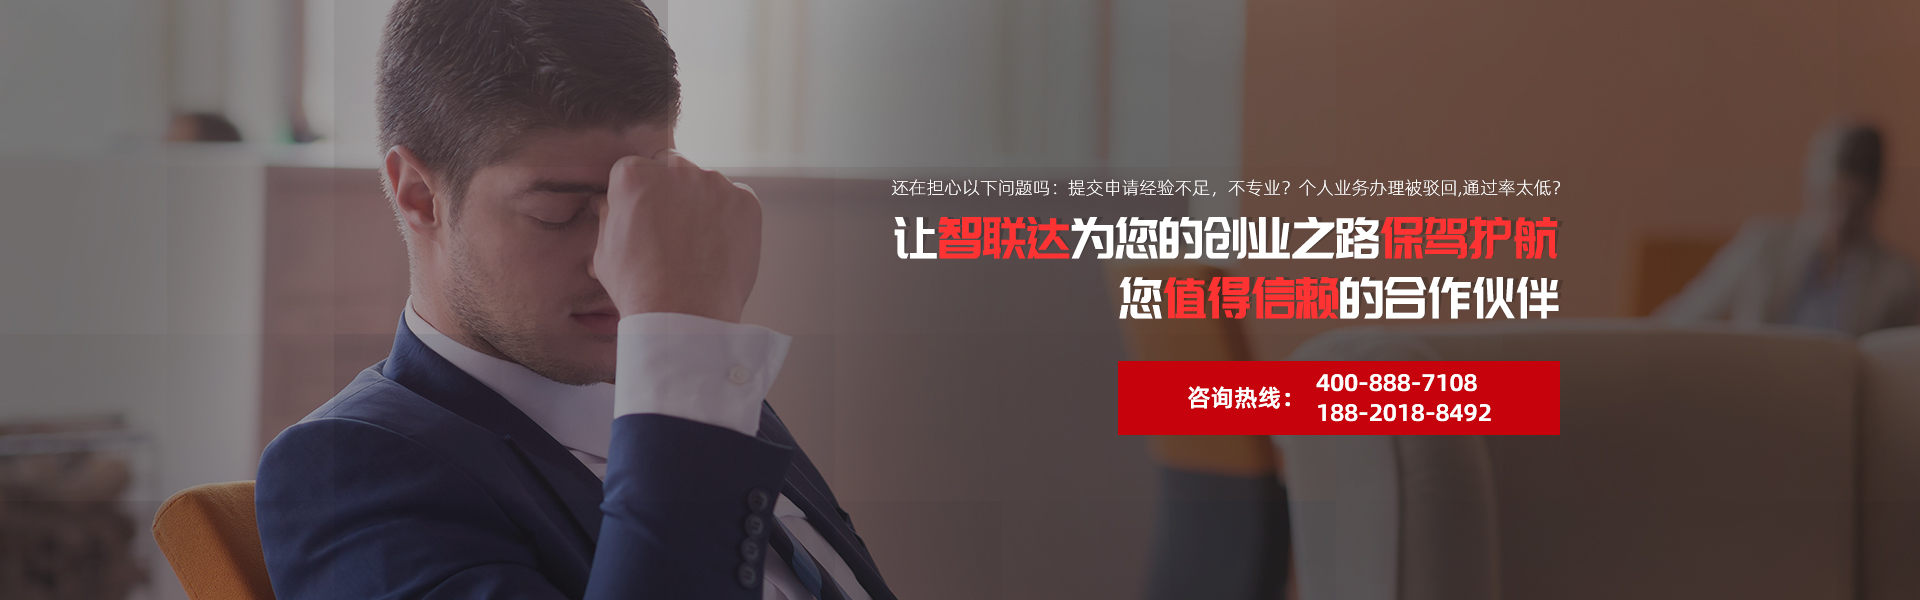 深圳智联达财税是您身边的公司注册代办专家